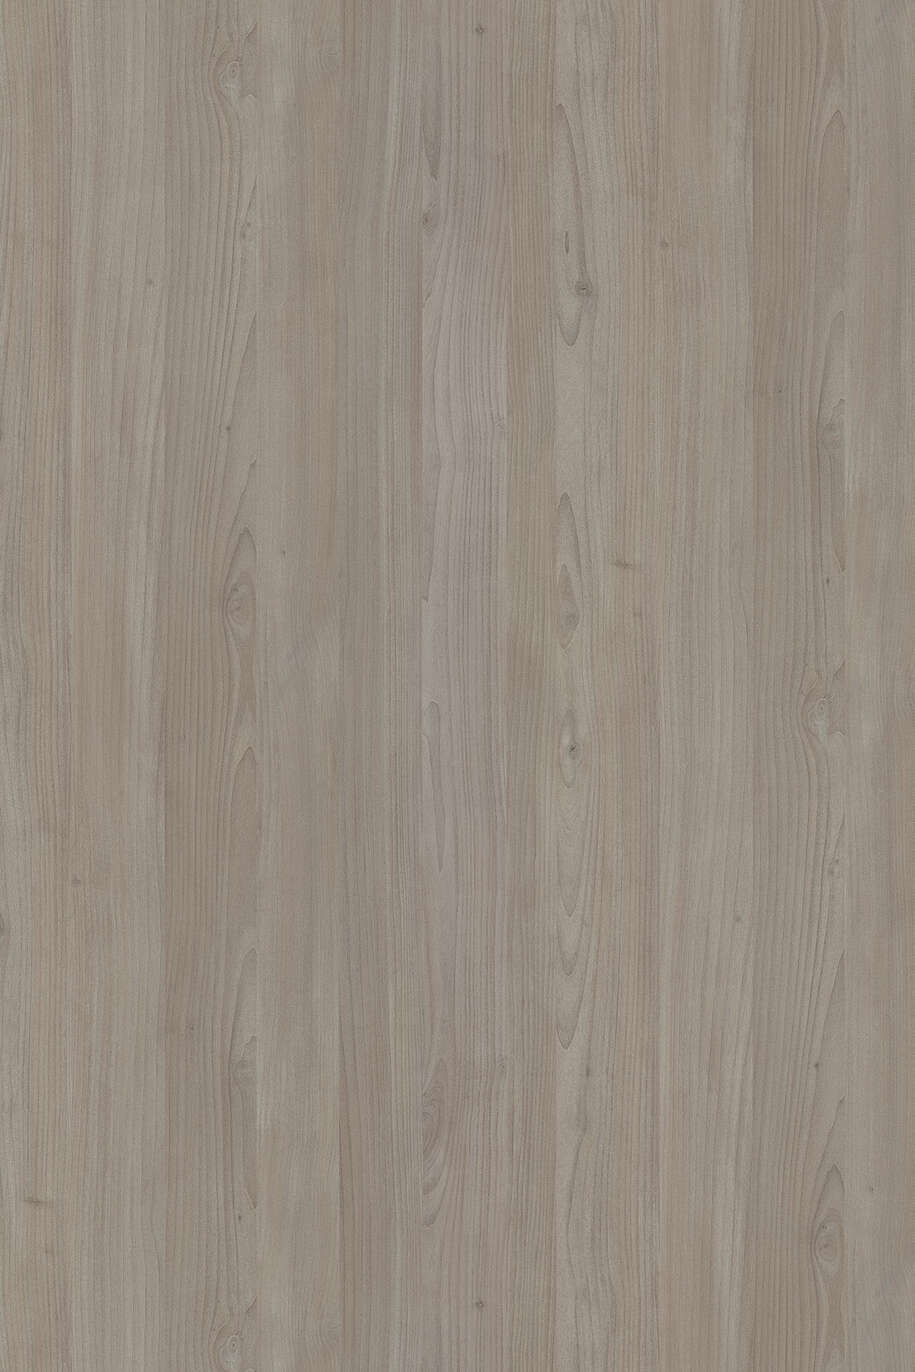 LDTD K089 PW Grey Nordic Wood 18 x 2070 x 2800 mm